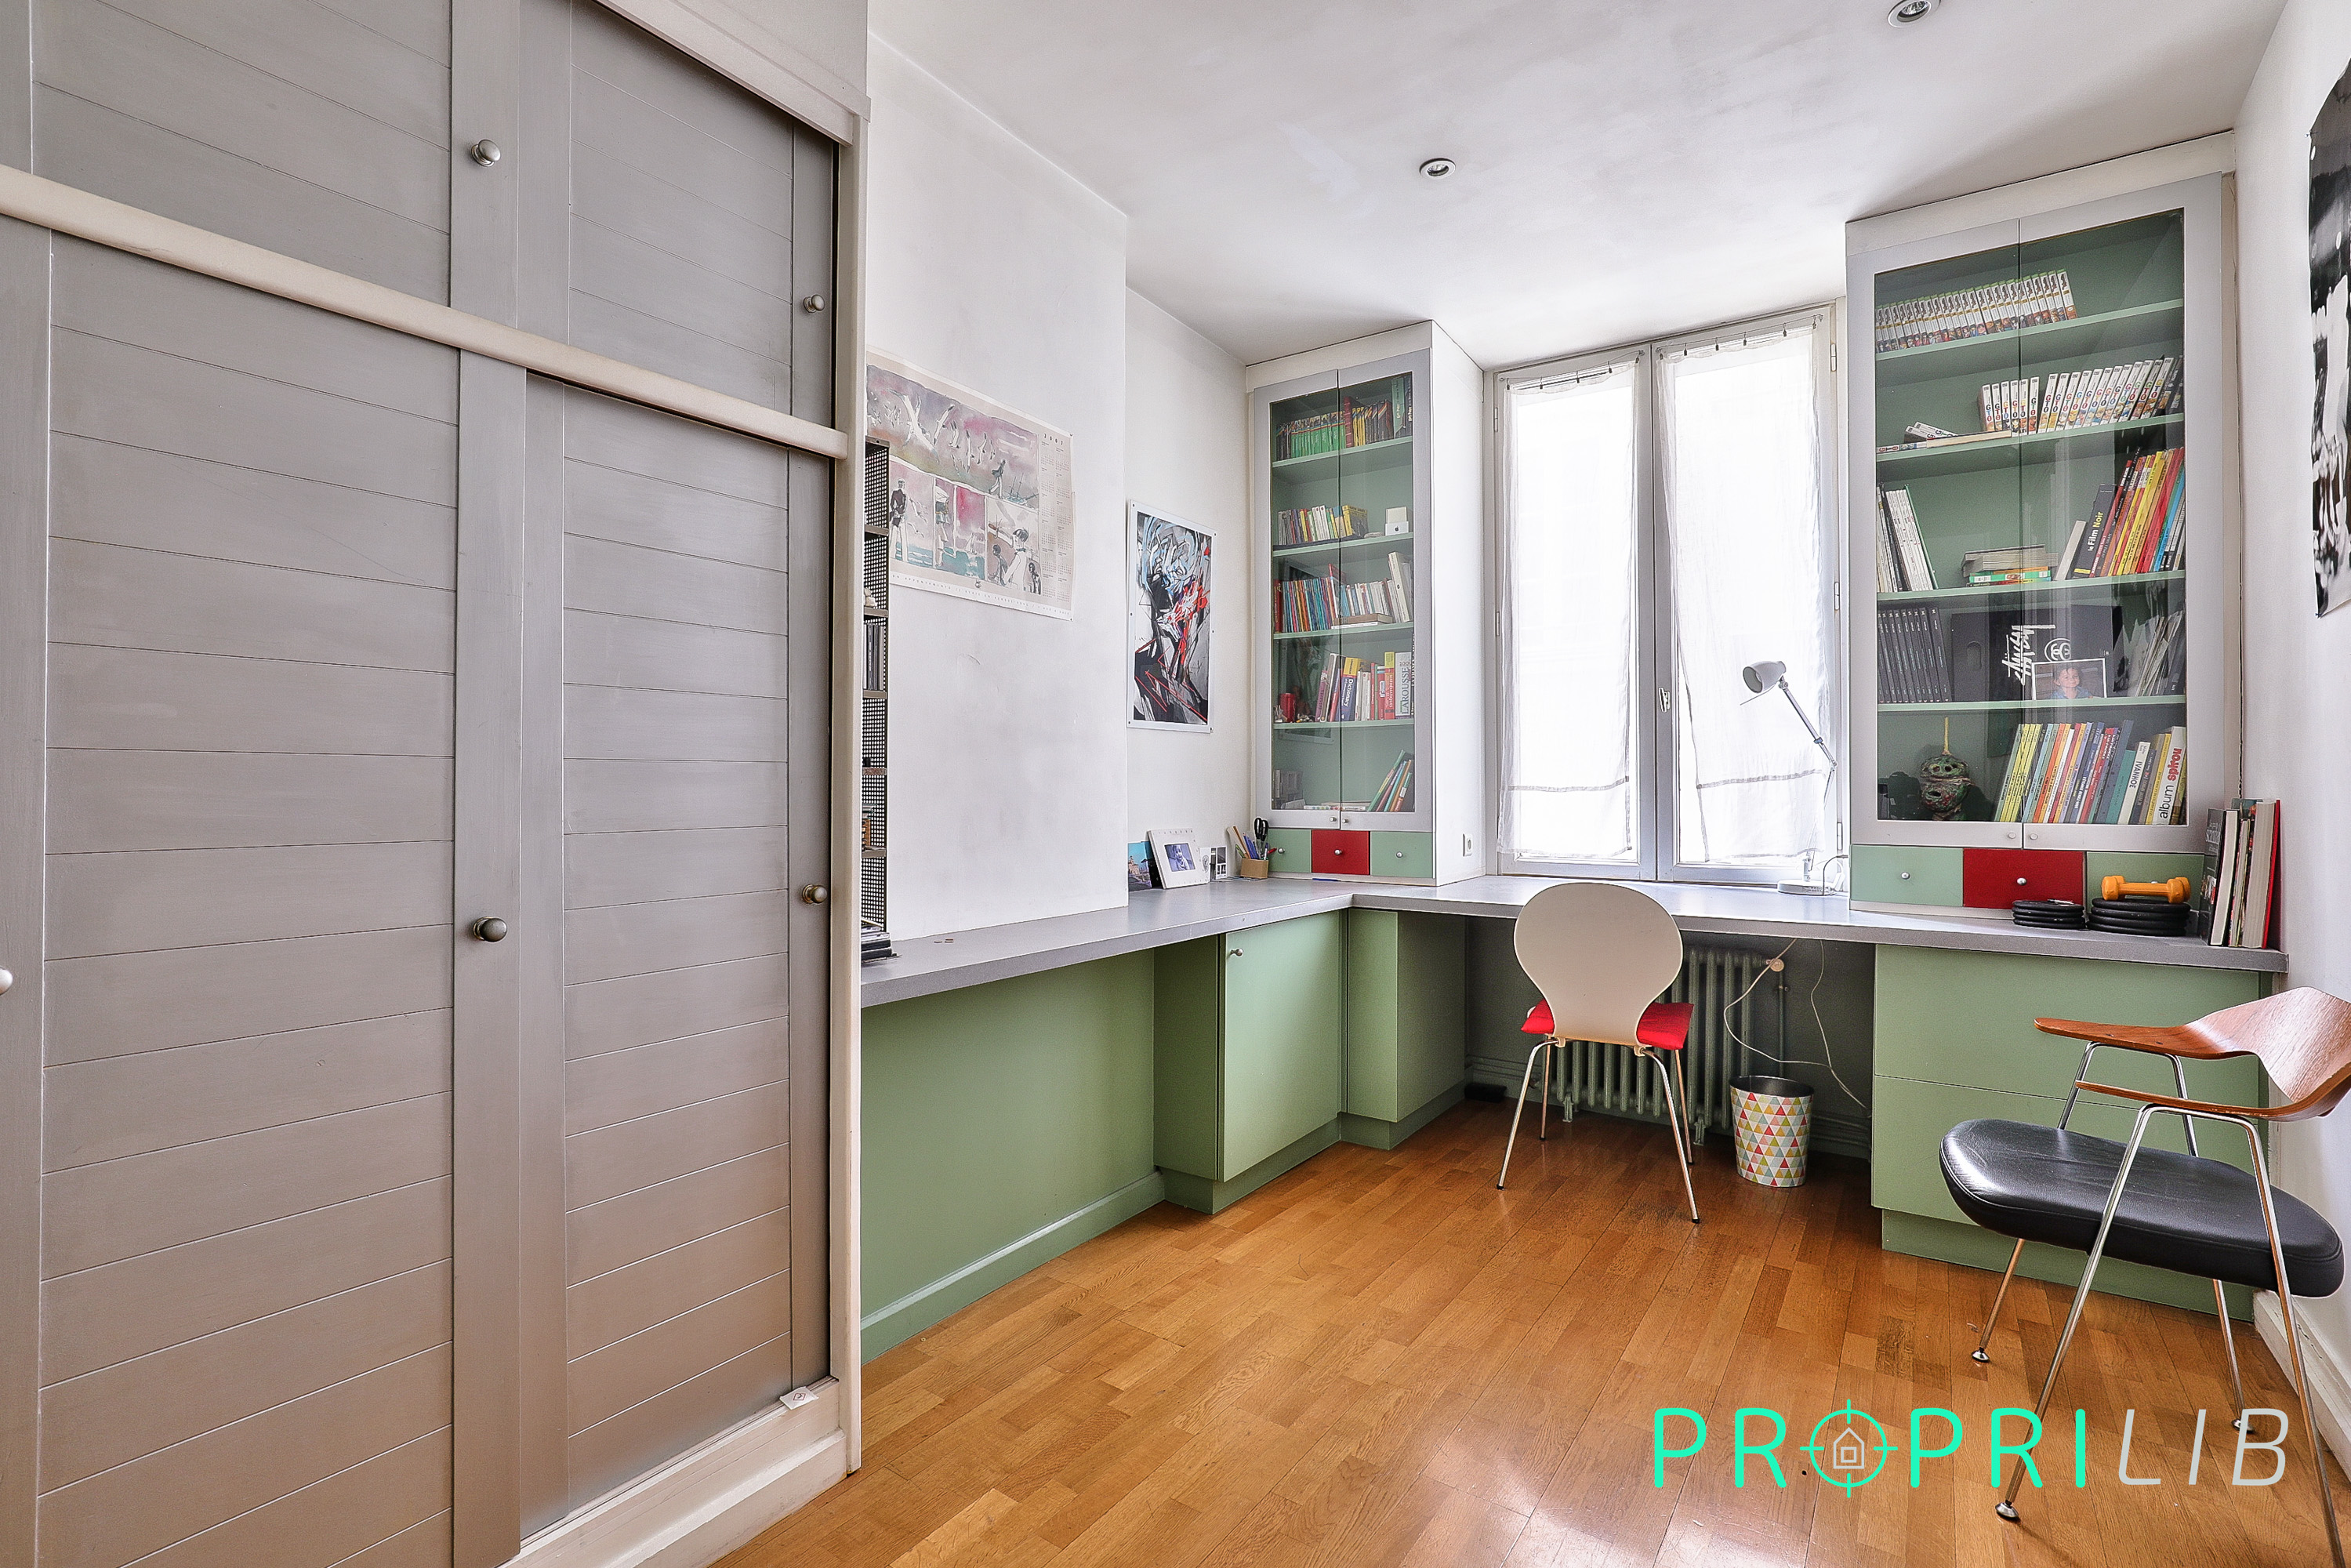 PropriLib l’agence immobilière en ligne au forfait vend cet appartement à Lyon 2ème